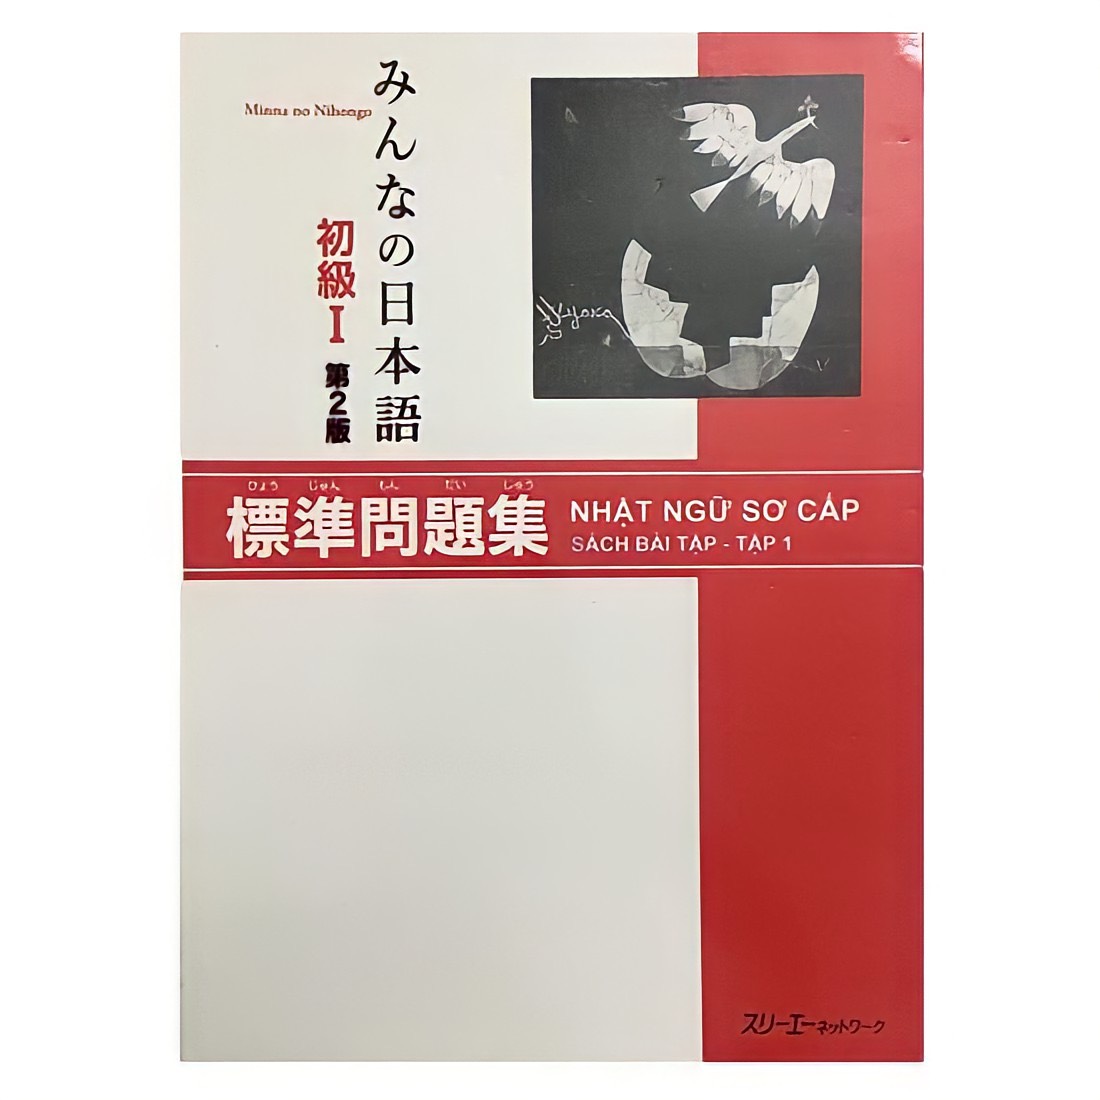 Minna No Nihongo Sơ cấp 1 Bản mới: Hyojun mondaishuu, Sách bài tập, giá rẻ